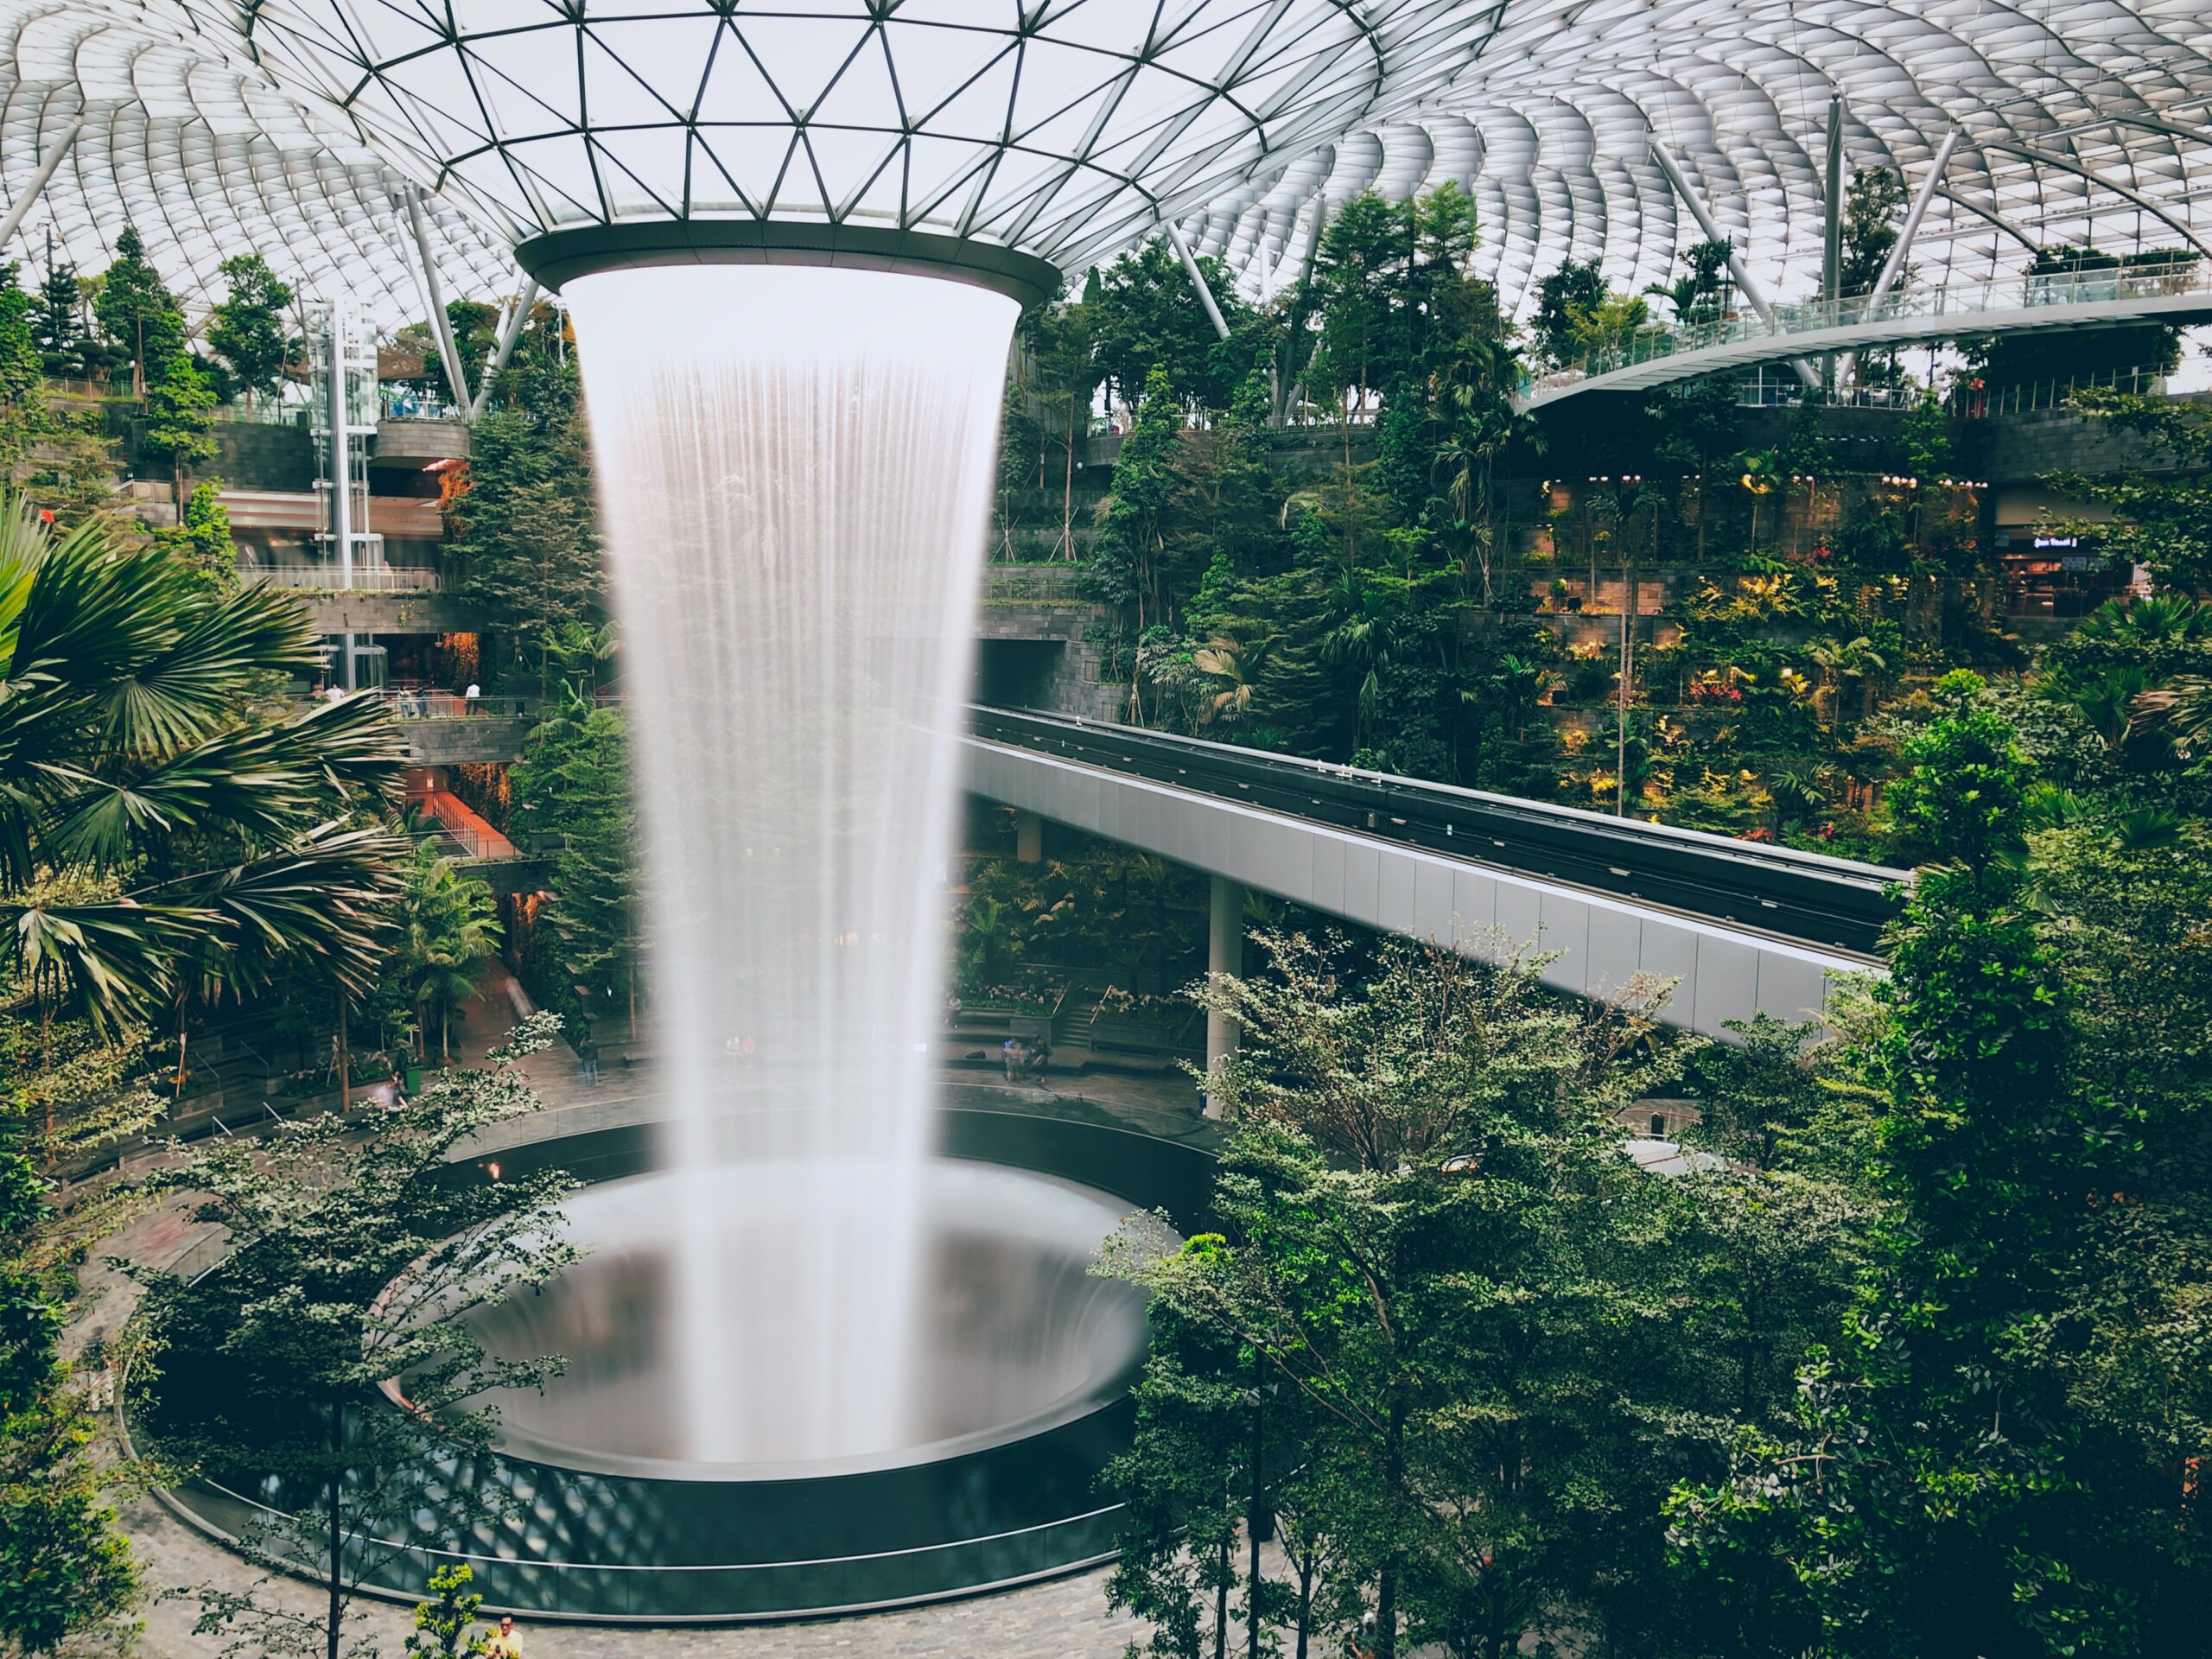 Rain Vortex indoor waterfall at Singapore's Jewel Changi international airport.